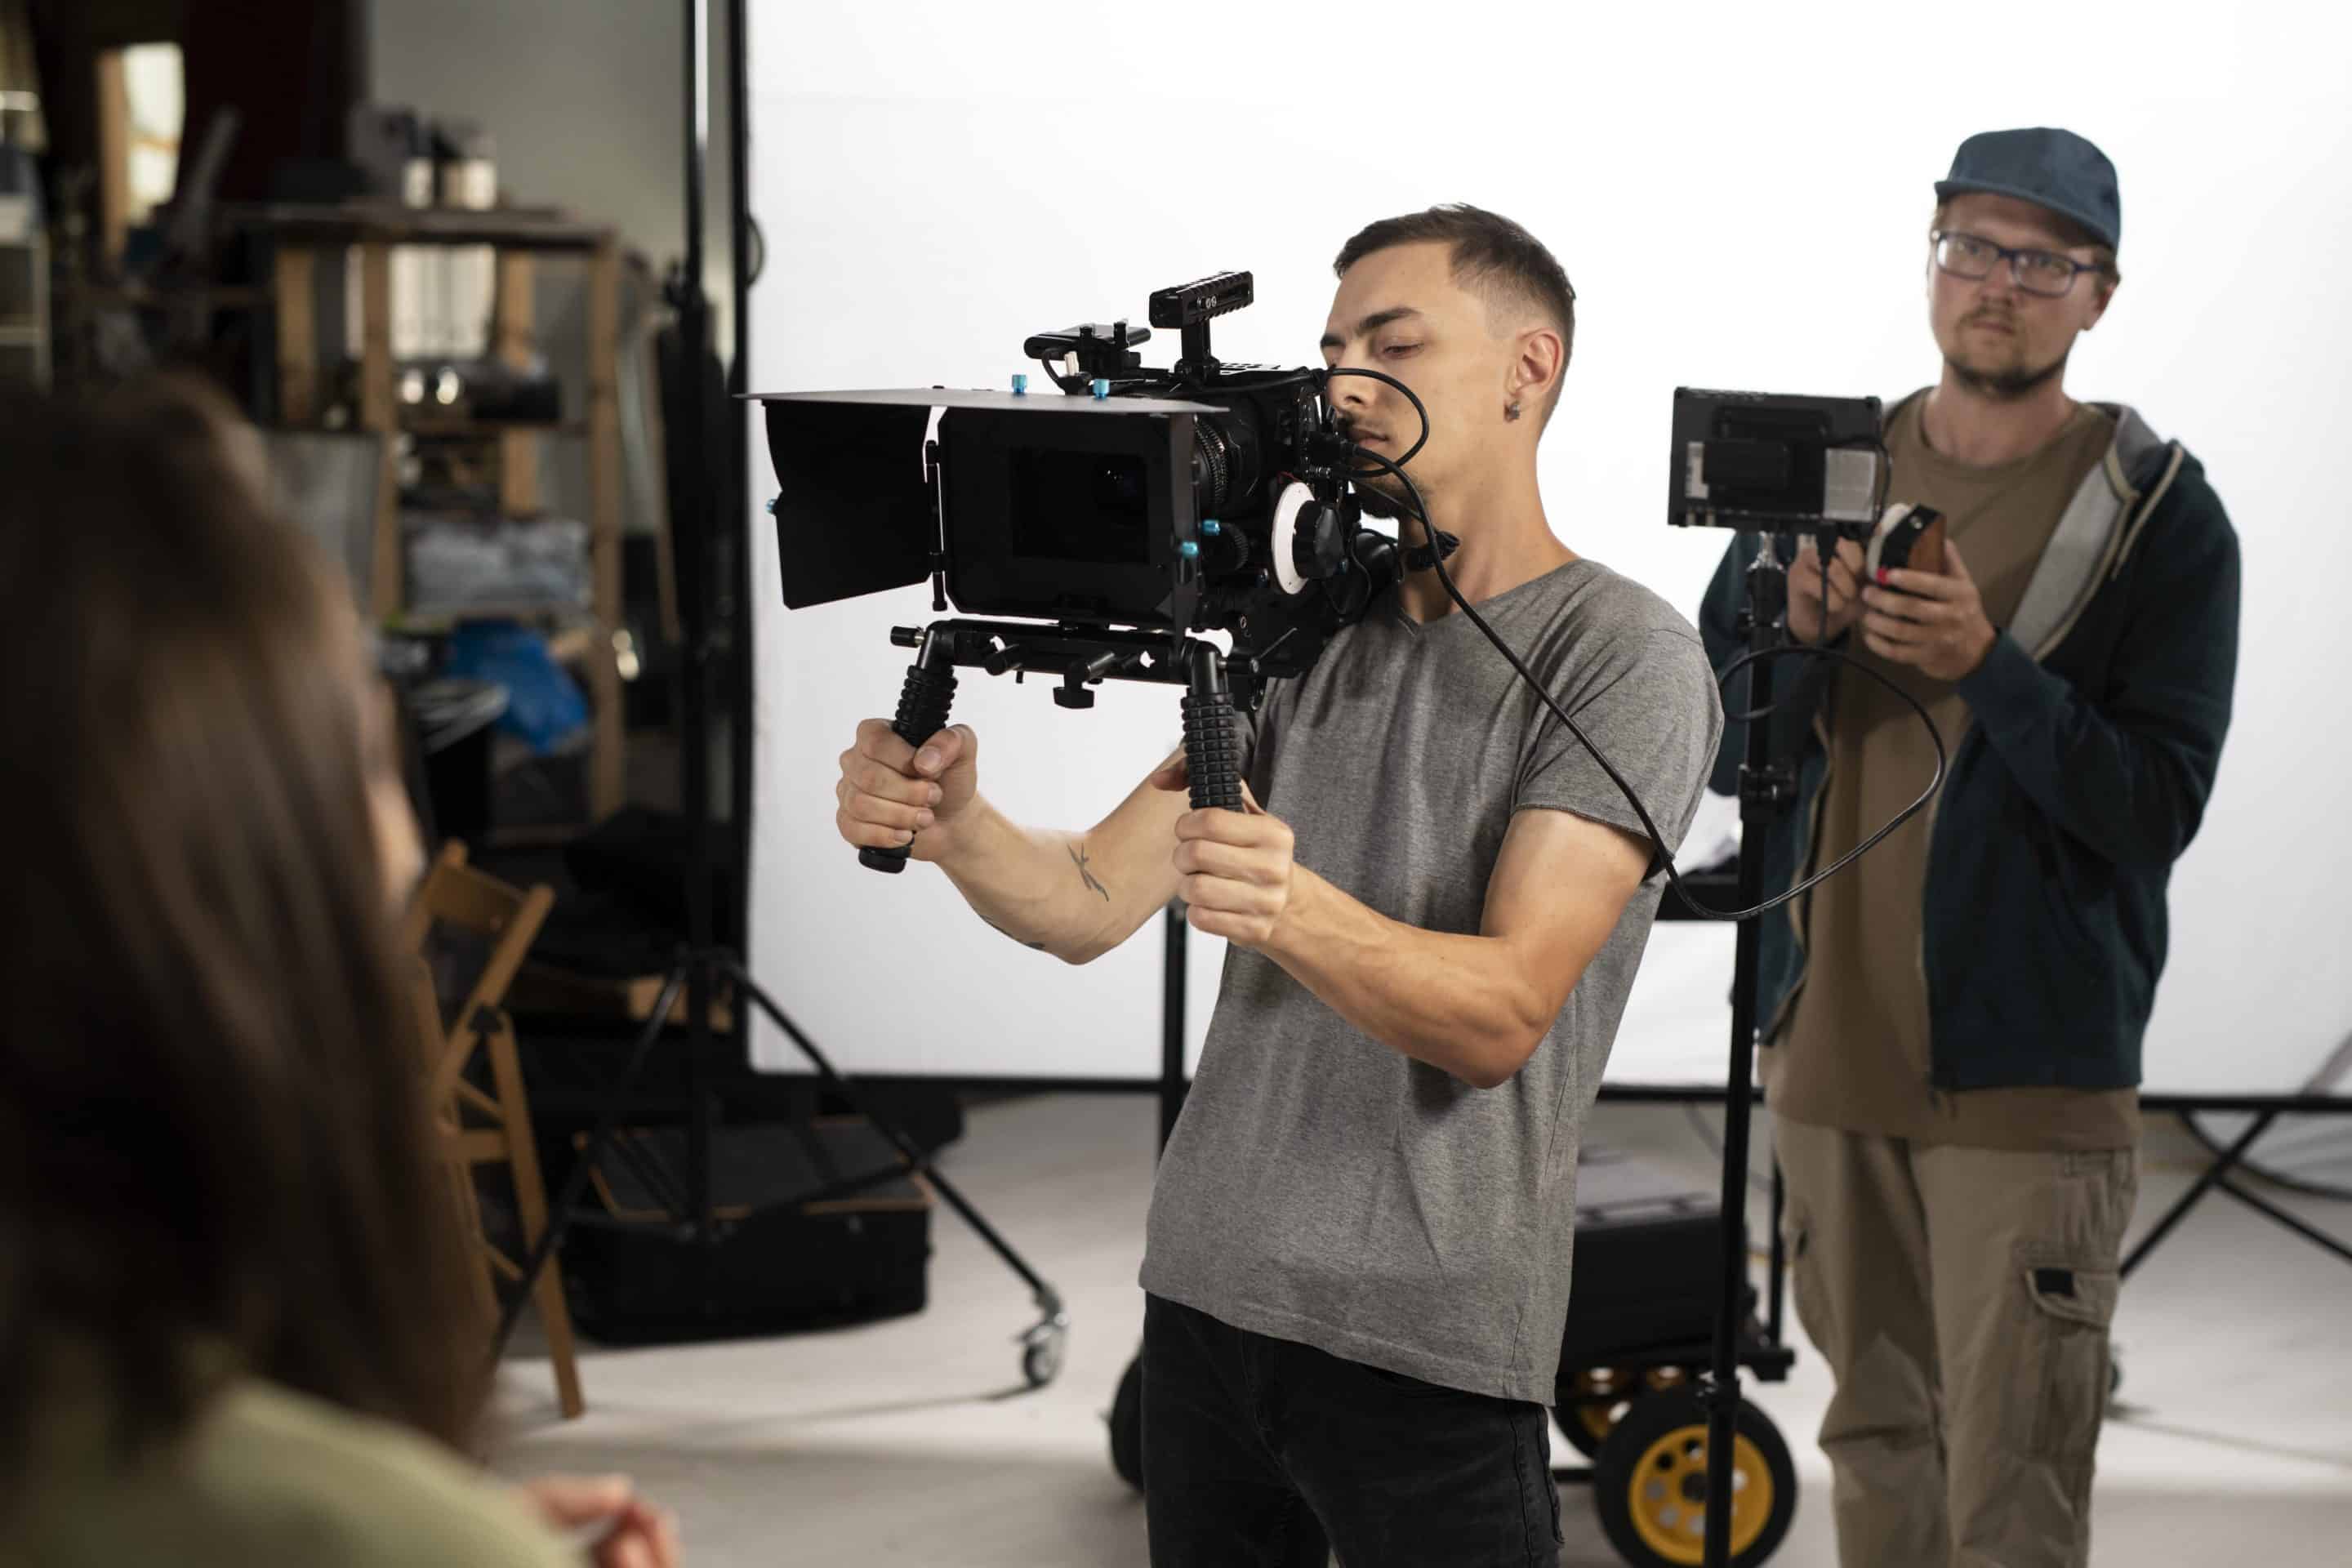 Prevención de riesgos laborales en el sector audiovisual. En la imagen vemos dos hombres jóvenes trabajando en un estudio de televisión, uno de ellos sujerando una cámara de grabación y el otro, detrás, sujetando un foco de luz.